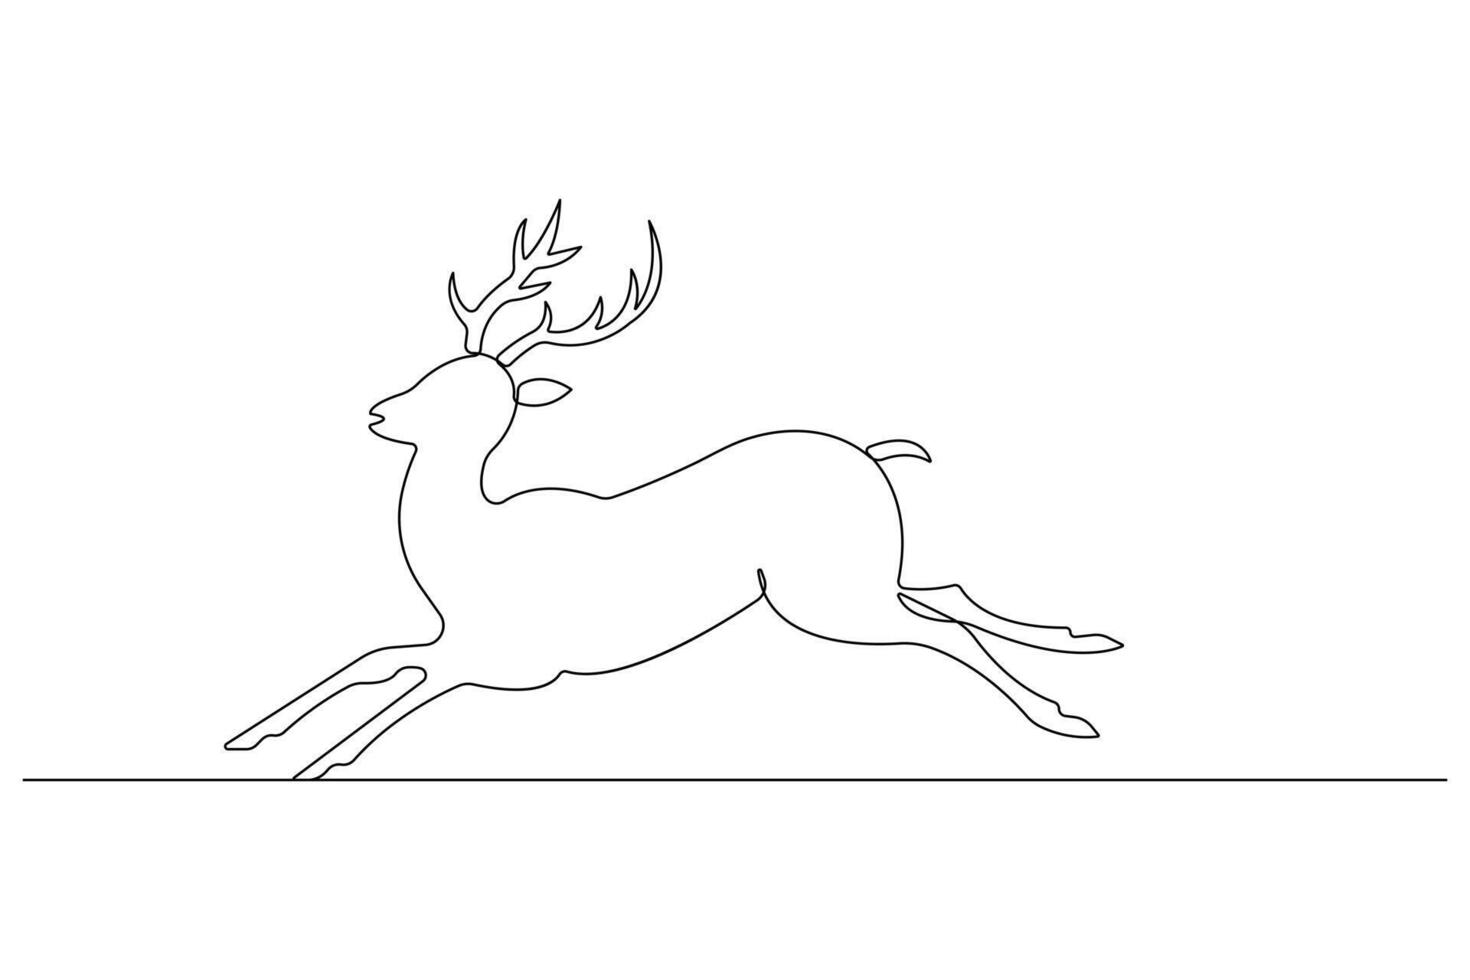 kontinuerlig ett linje konst teckning av vild djur- rådjur översikt illustration vektor